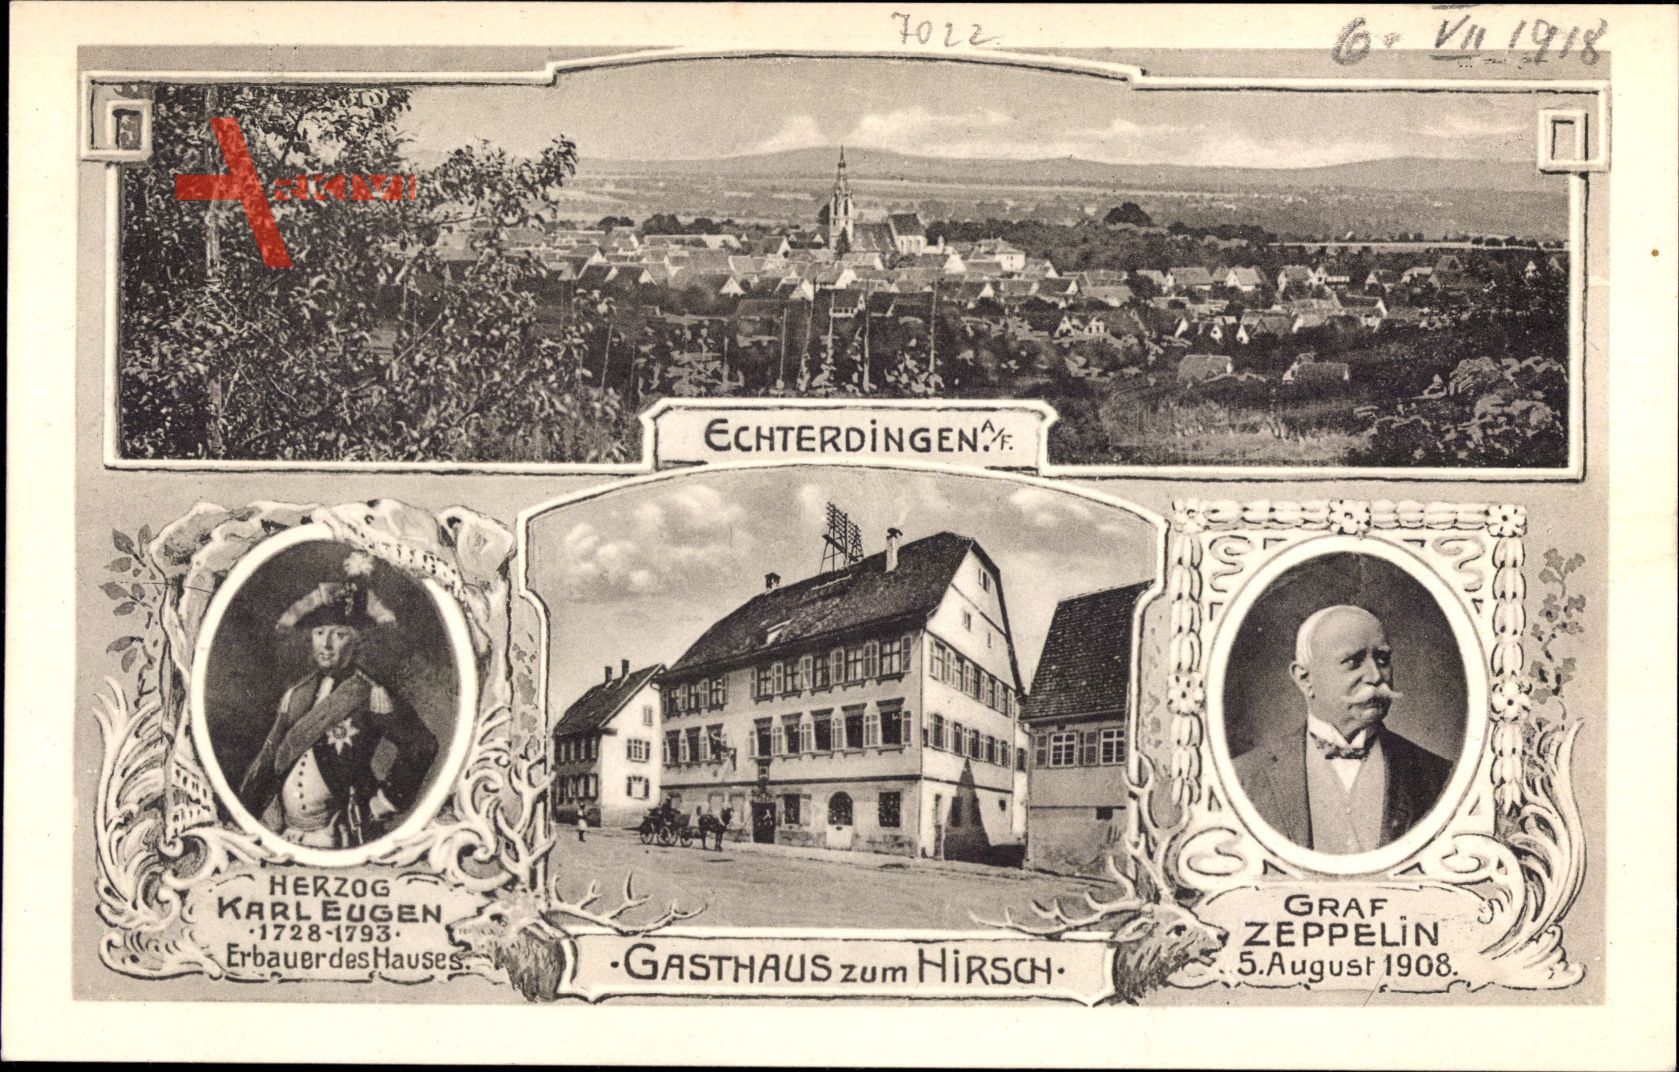 Leinfelden Echterdingen, Graf Zeppelin, Gasthaus zum Hirsch,Herzog Karl Eugen